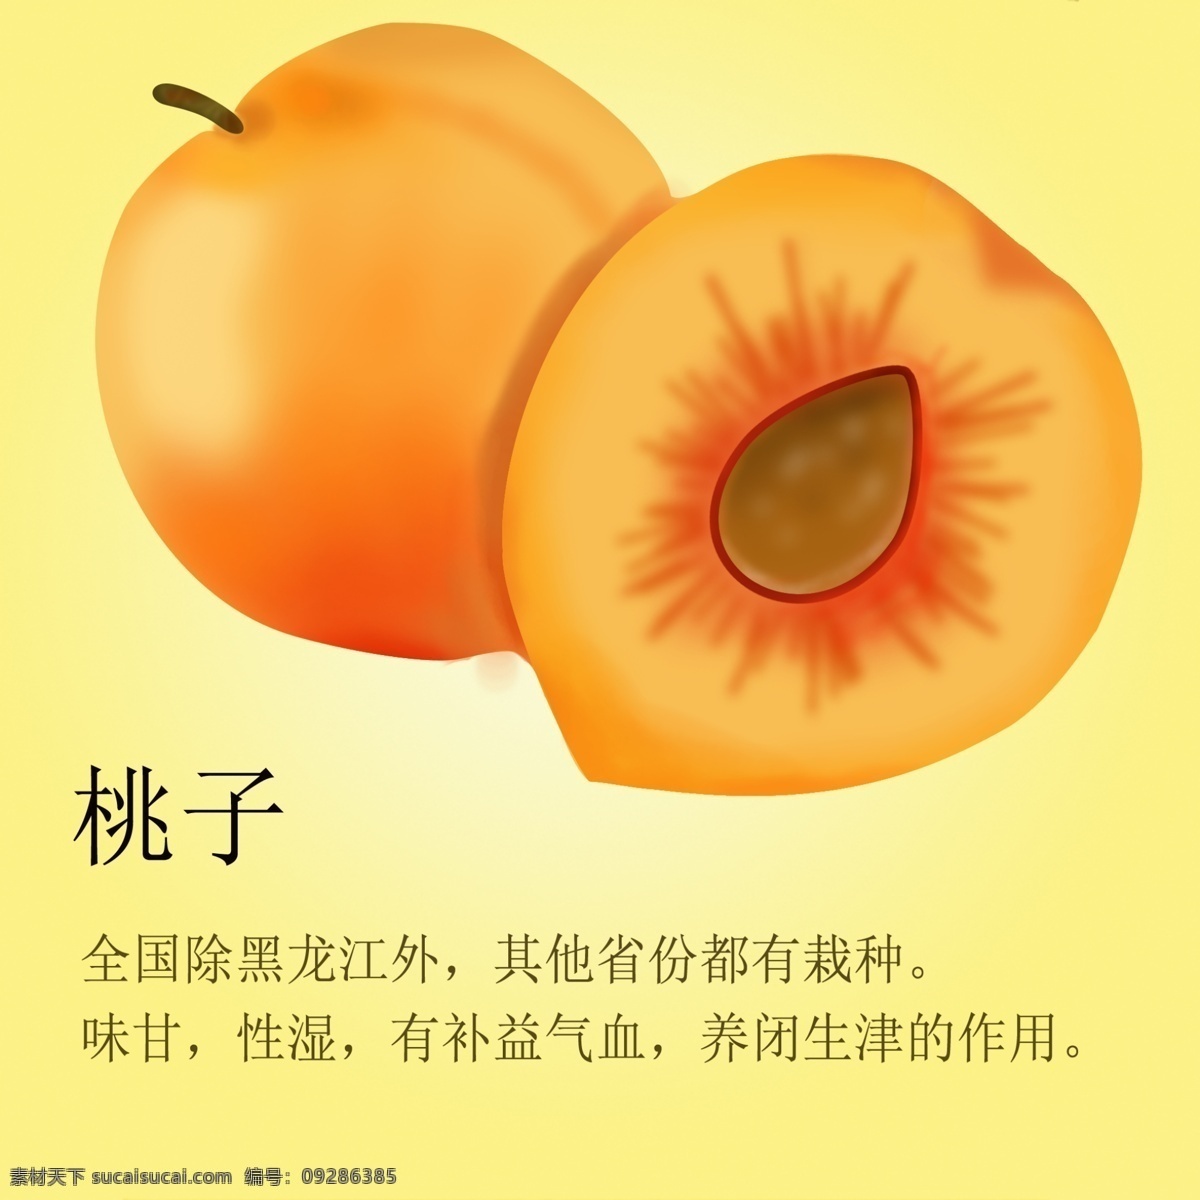 桃子 食品 桃心 手绘桃子 桃子素材 食品广告 广告设计模板 源文件